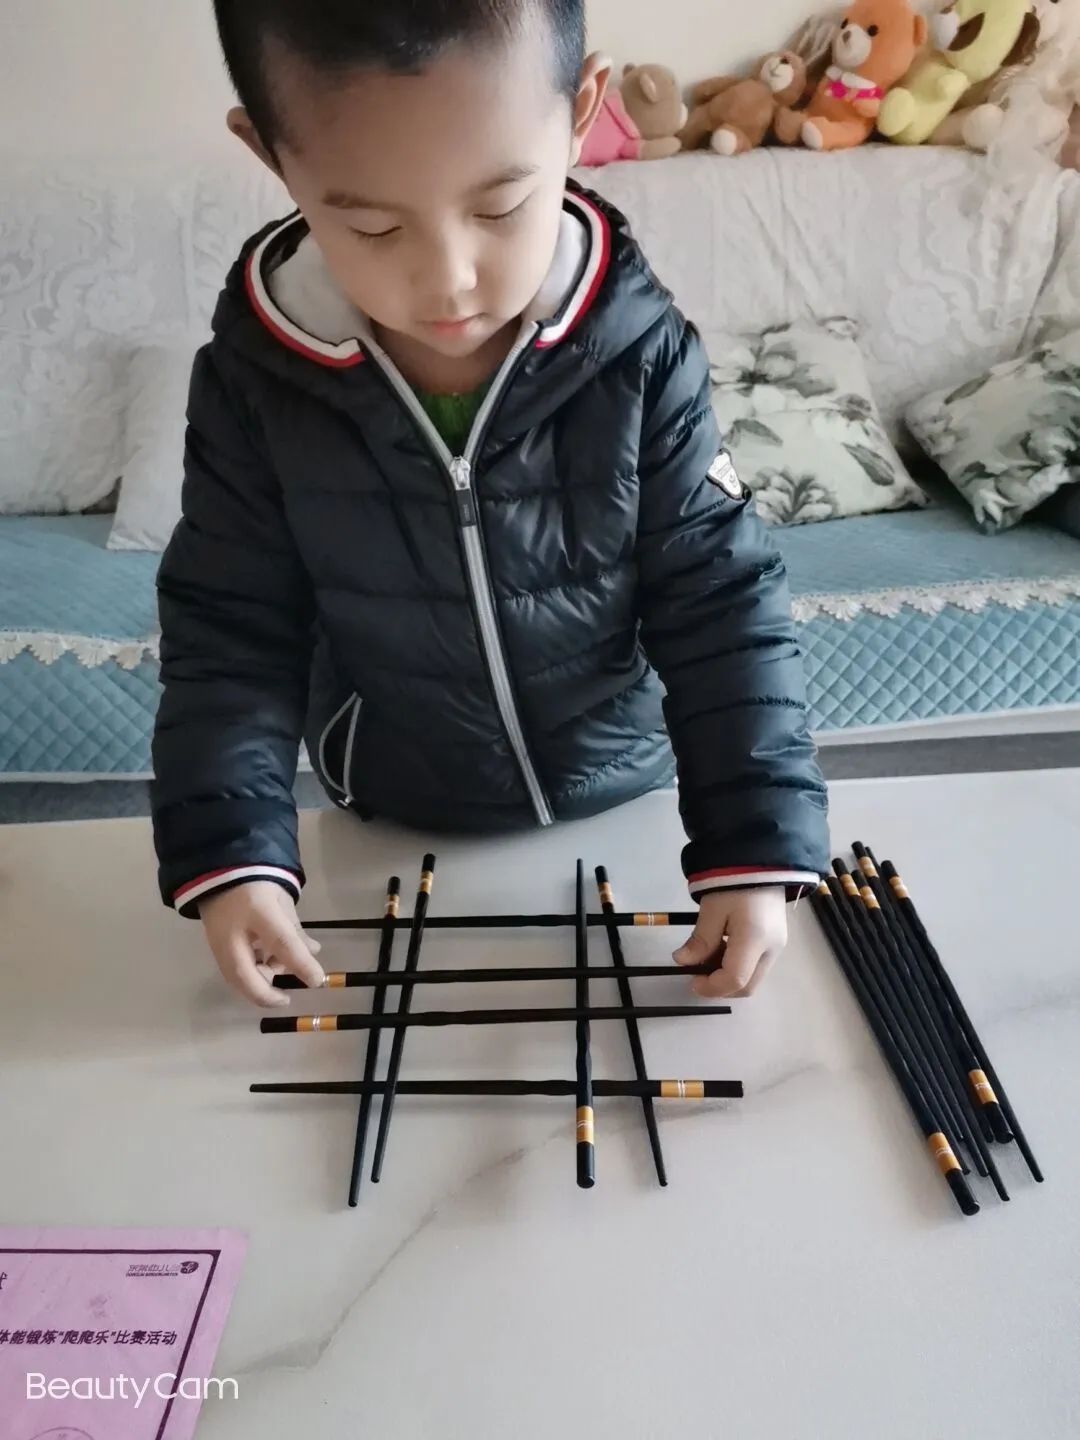 游戏玩法:将两双筷子交叉摆放,交错上升,堆成一座高塔